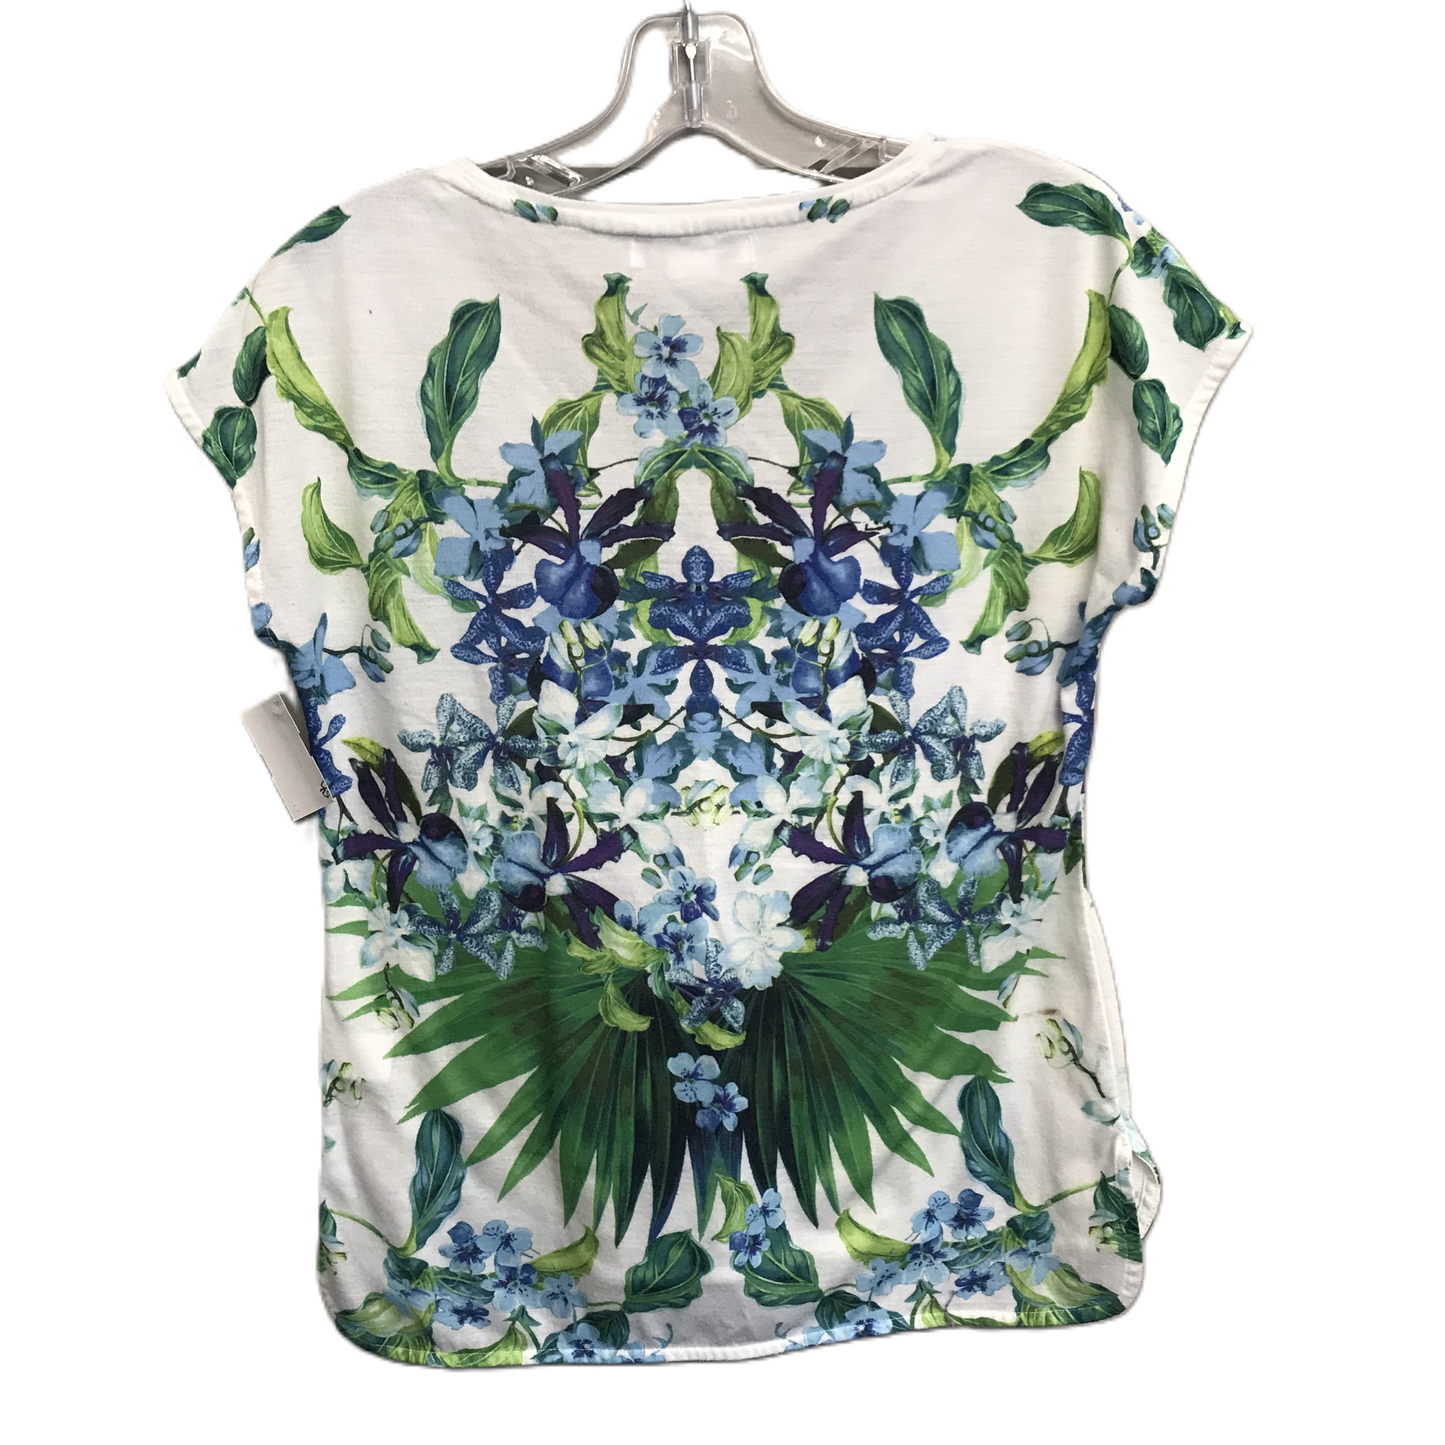 Floral Print Top Short Sleeve By Liz Claiborne, Size: Petite   S